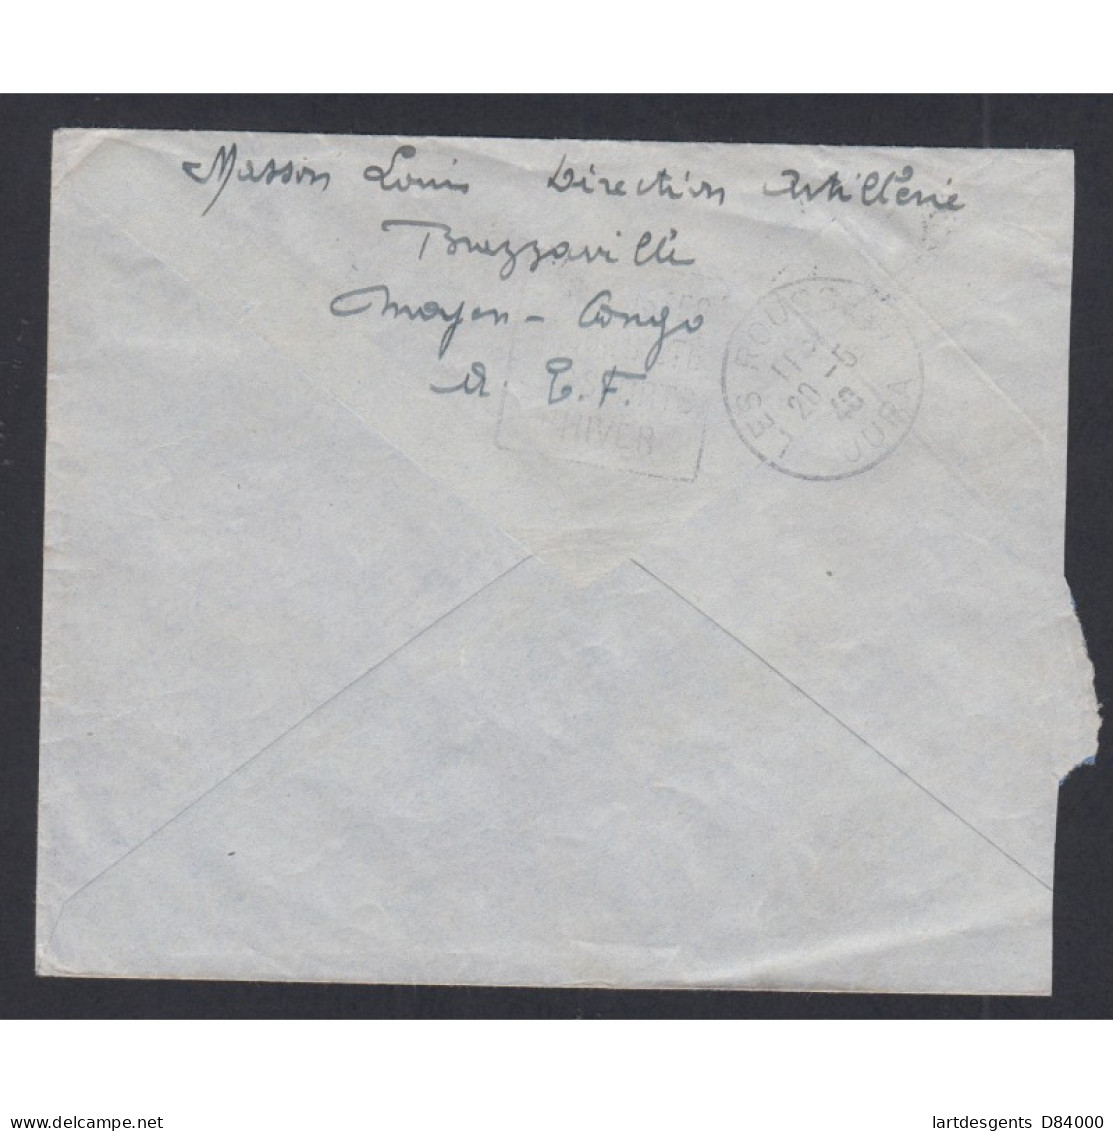 Colonies - Lettre Cachet Brazzaville Moyen Congo-  Contrôle Postale  1940, Lartdesgents.fr - Briefe U. Dokumente